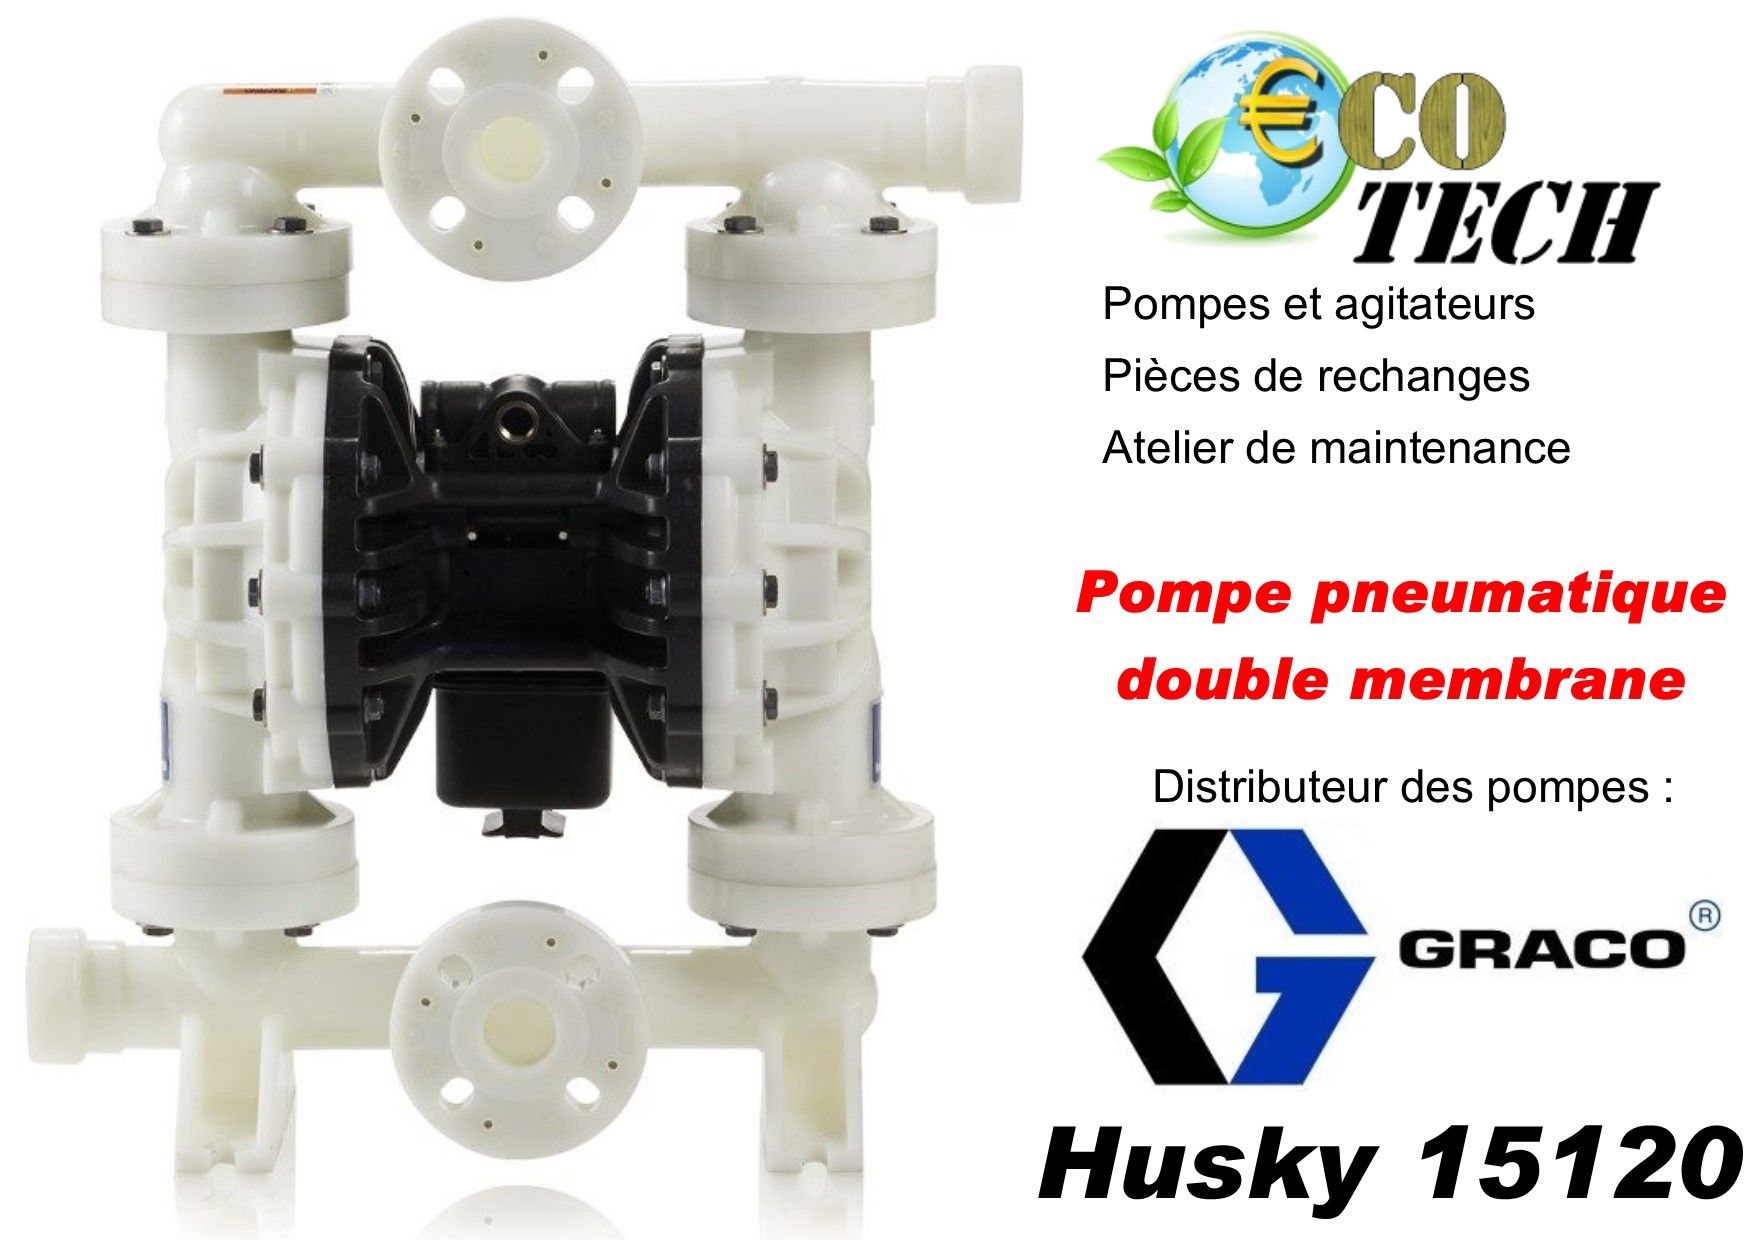 Husky 15120 pompes à membrane à commande pneumatique graco eco-tech normandie_0